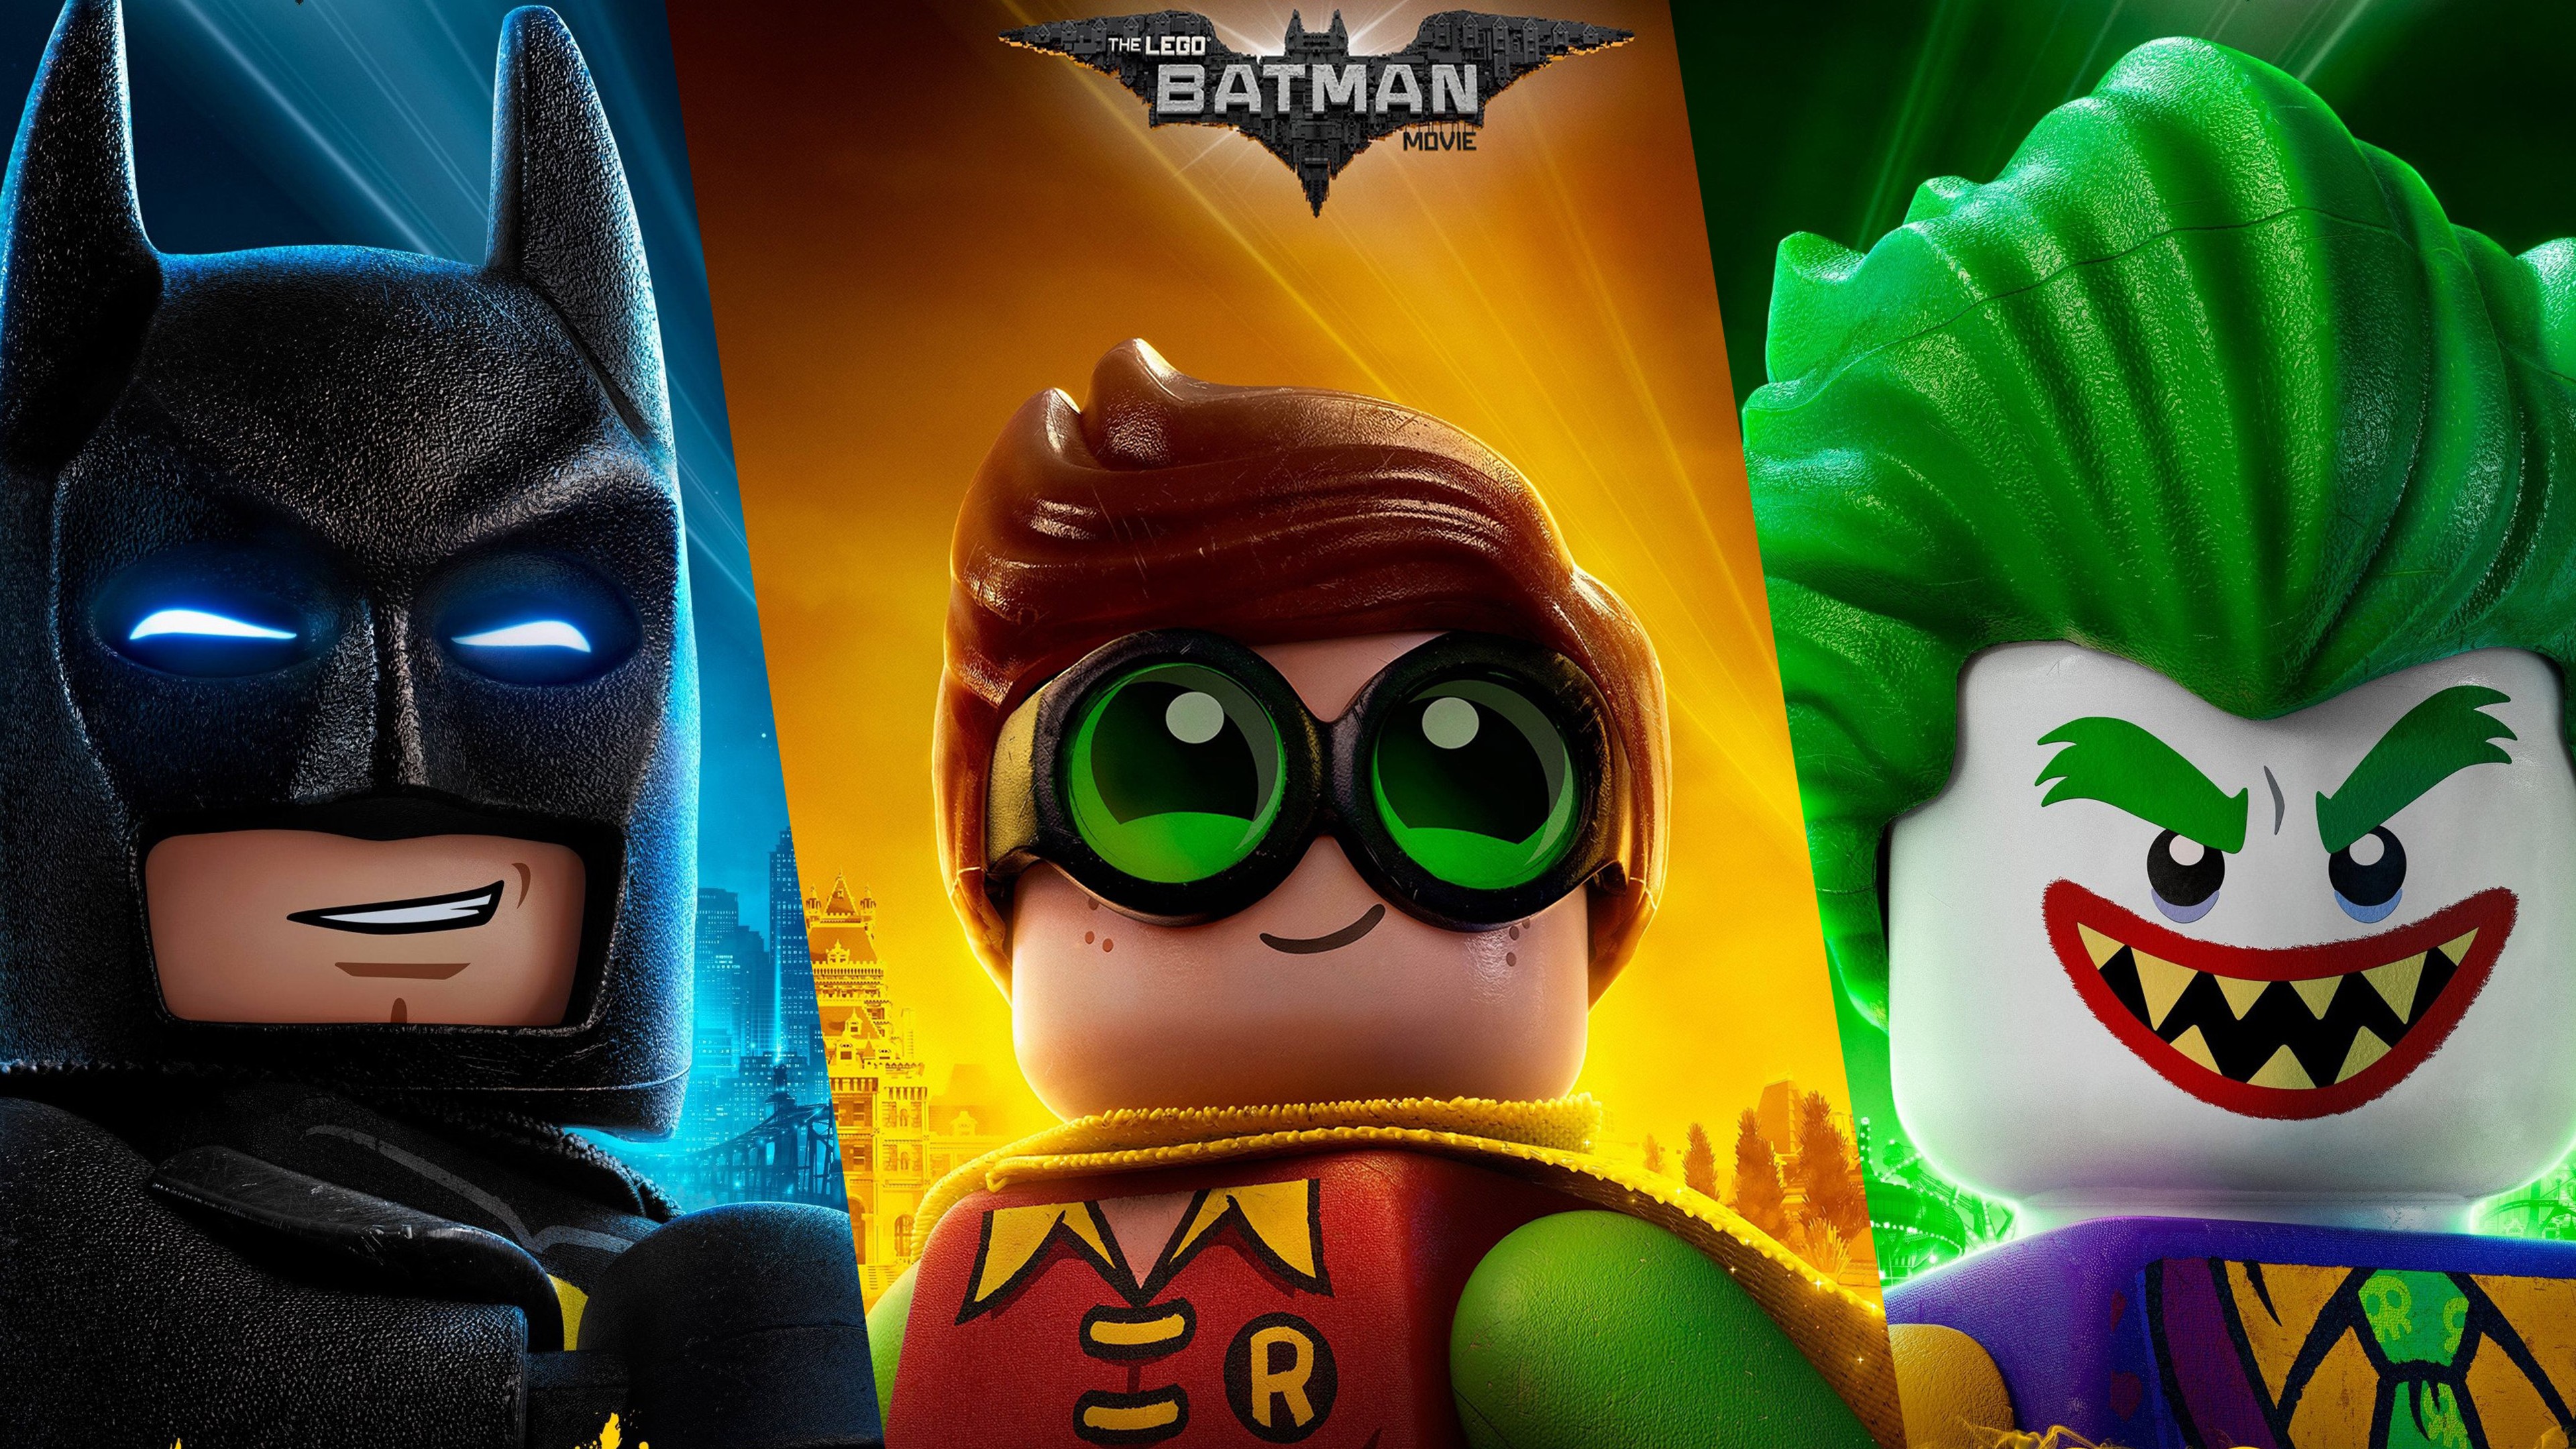 30+] Lego Batman Movie Wallpapers - WallpaperSafari